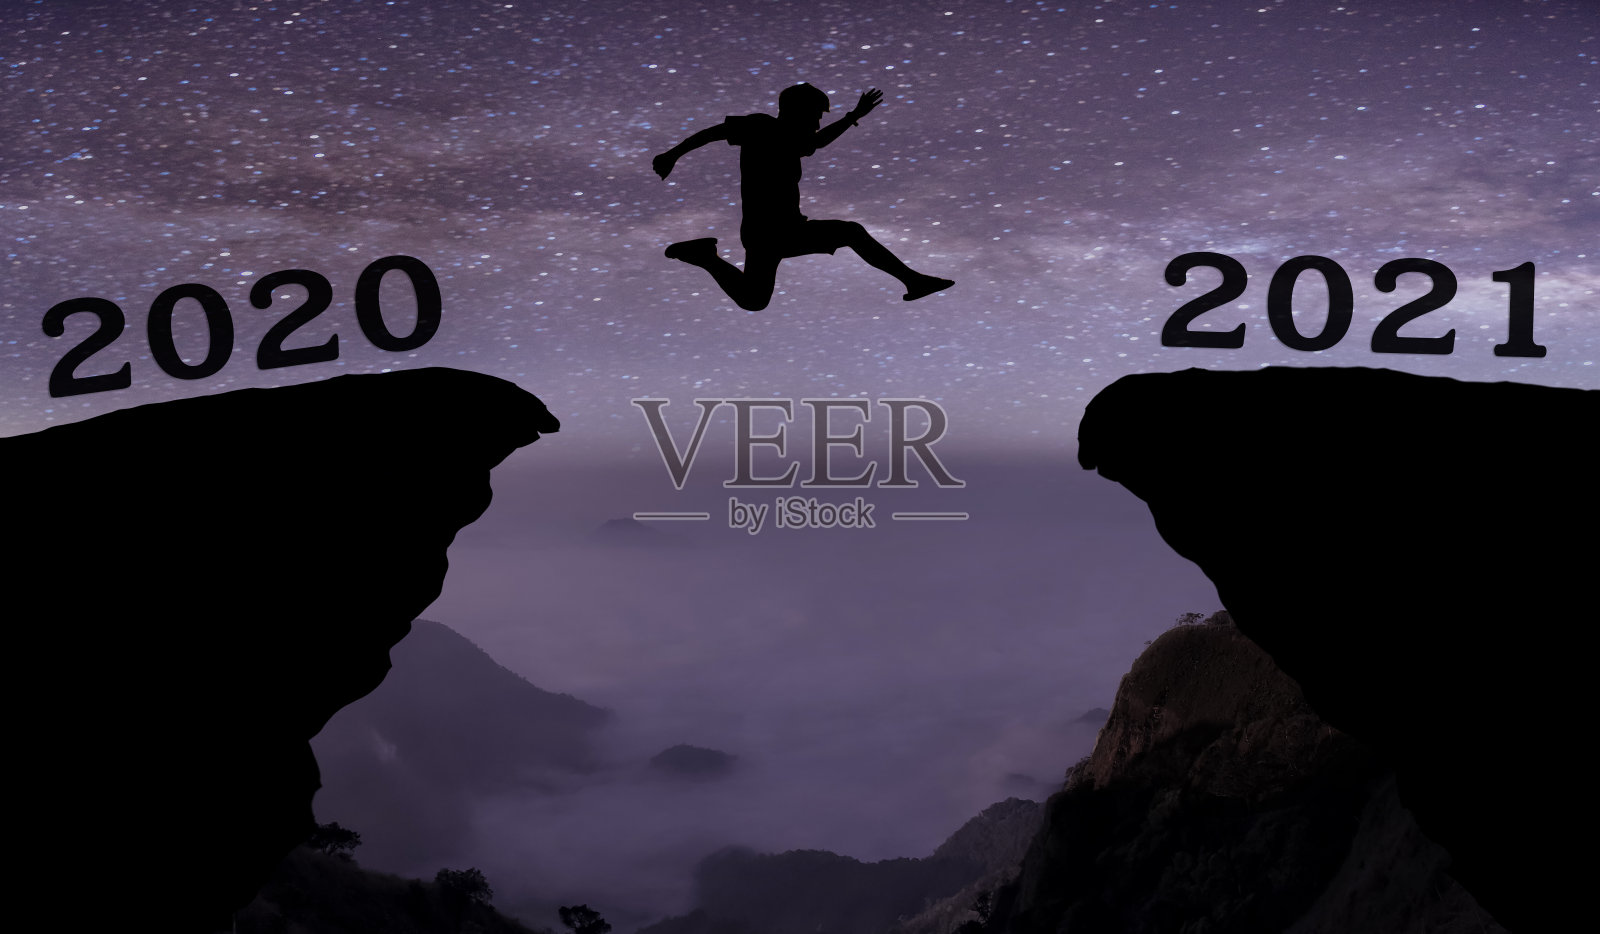 一名年轻男子飞跃2020年至2021年之间的夜空与星星，穿过山沟上剪影的黄昏多彩的天空。2021年新年快乐。照片摄影图片